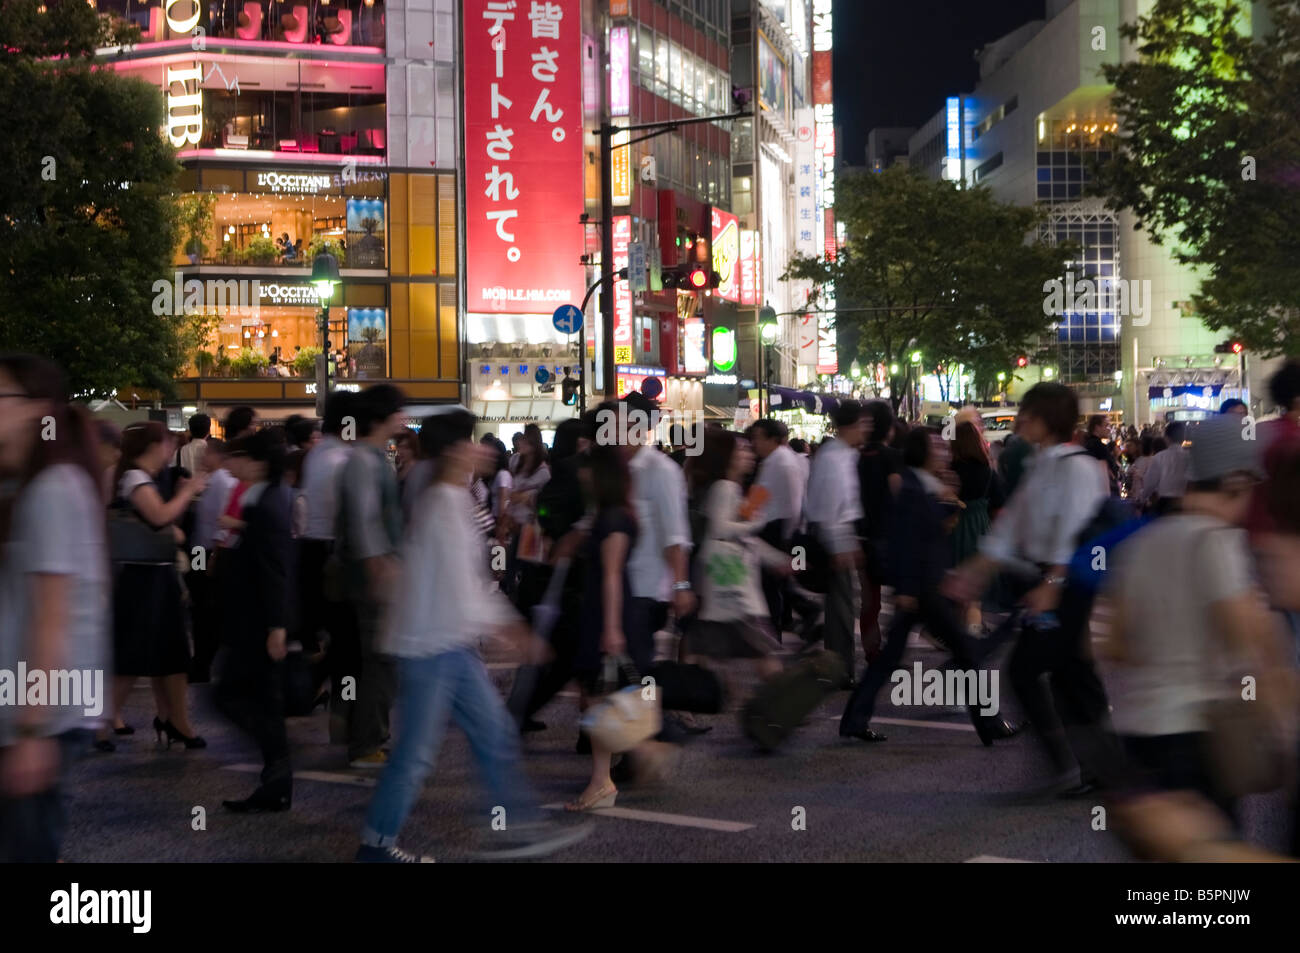 Shibuya Crossing at Night Stock Photo